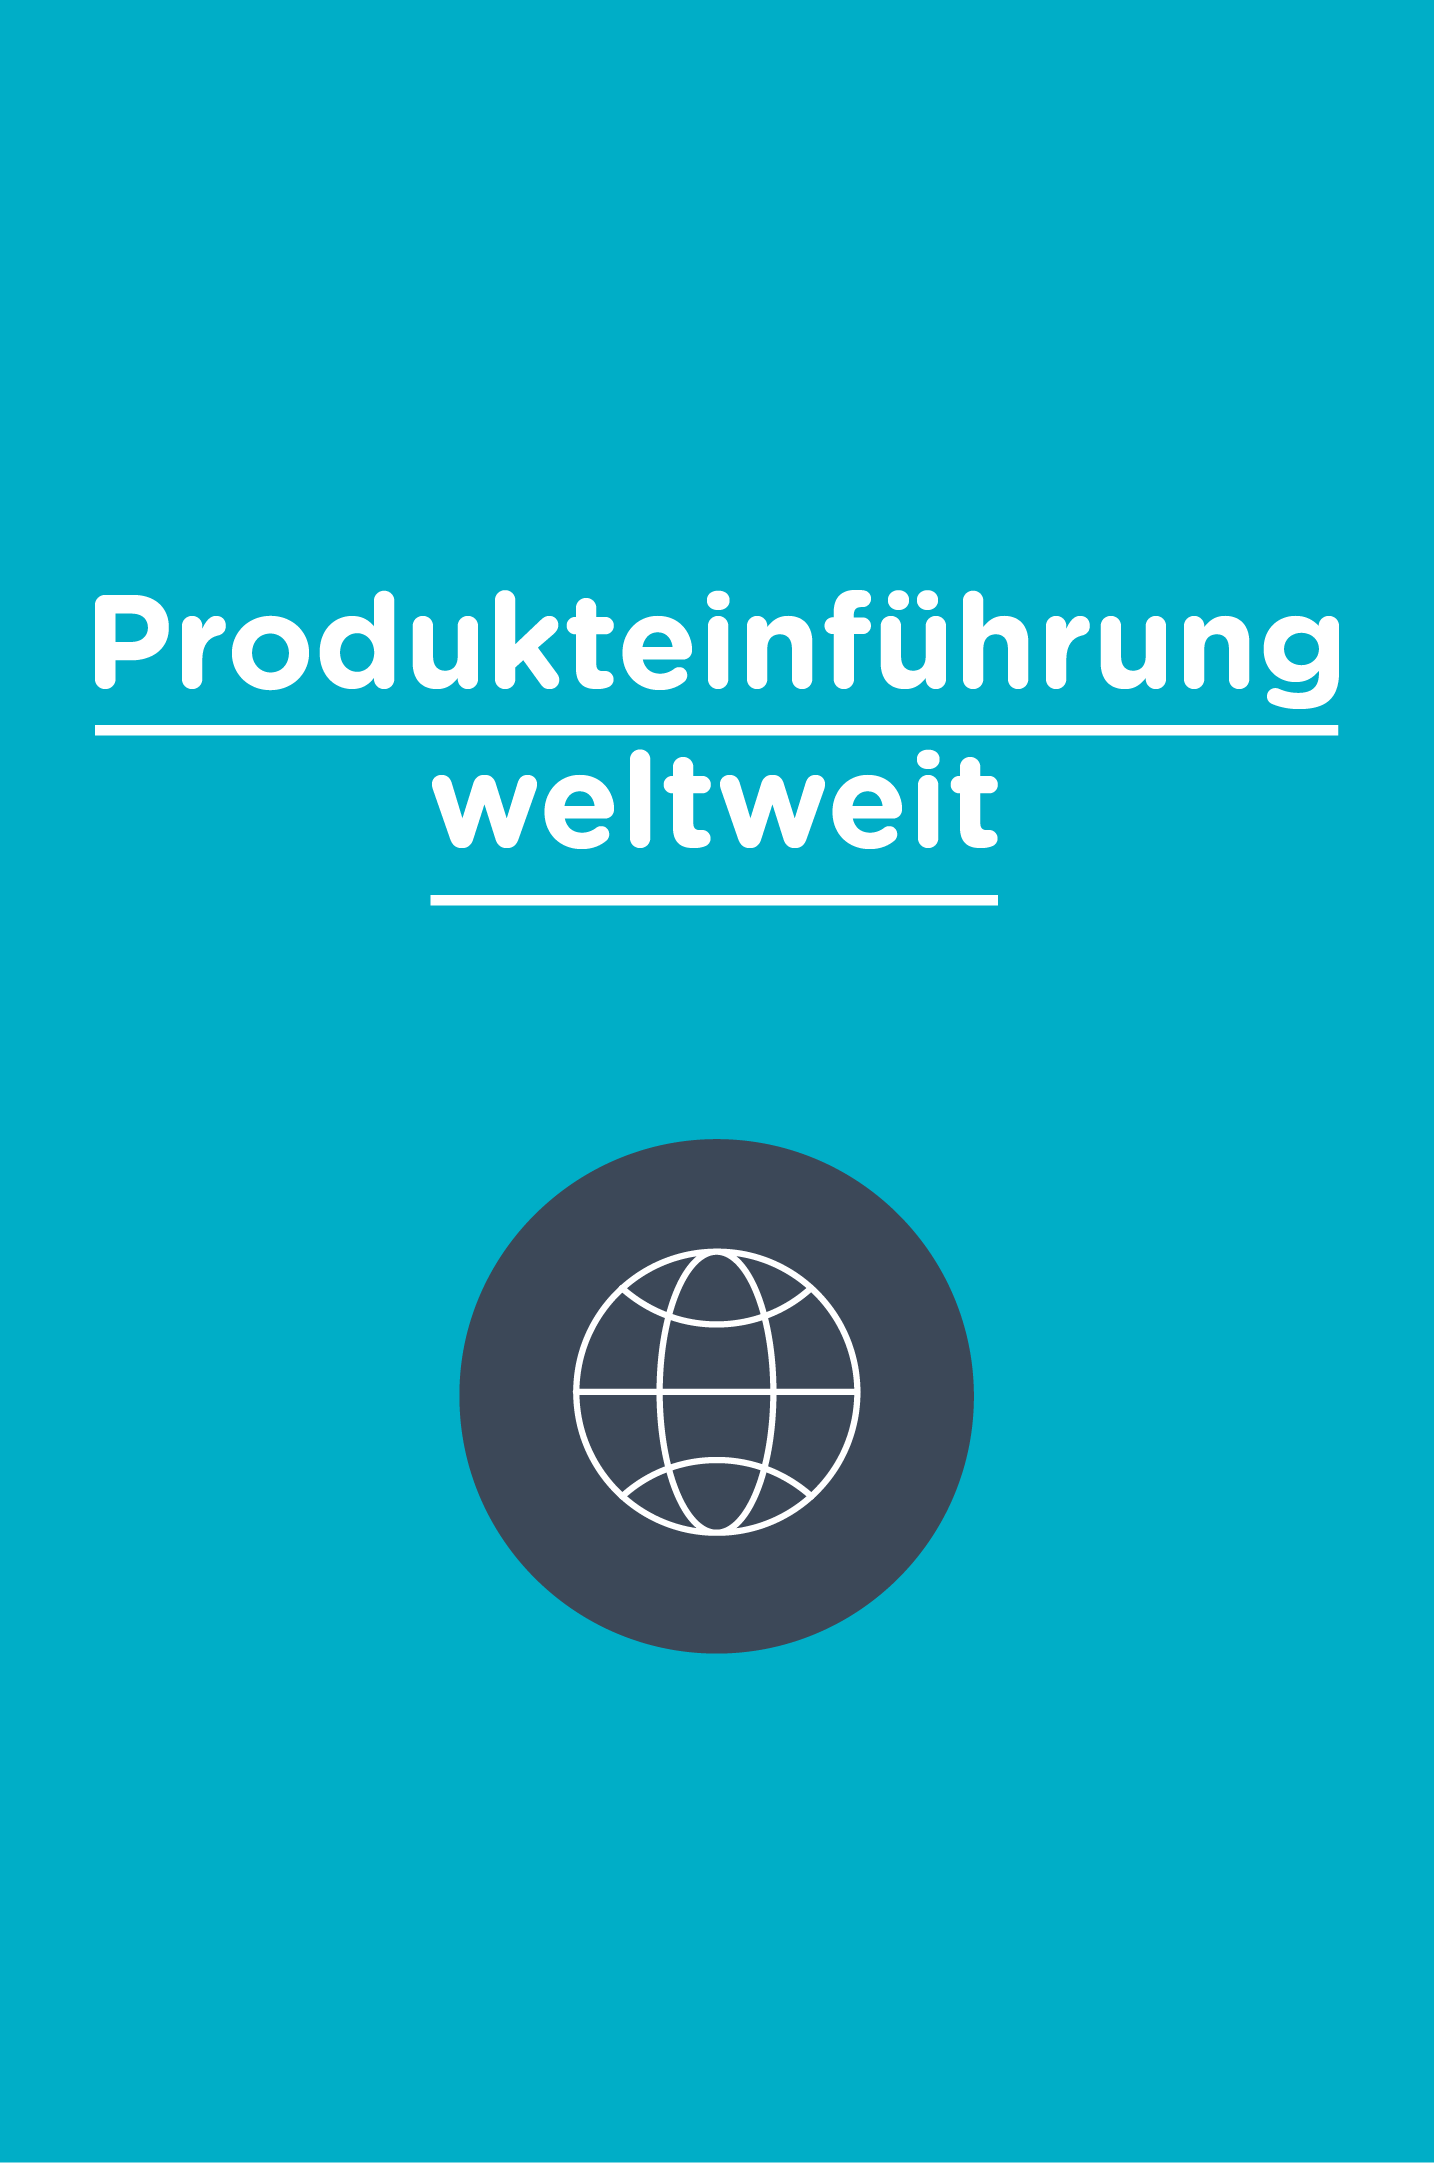 Schritt neun: Produkteinführung weltweit.